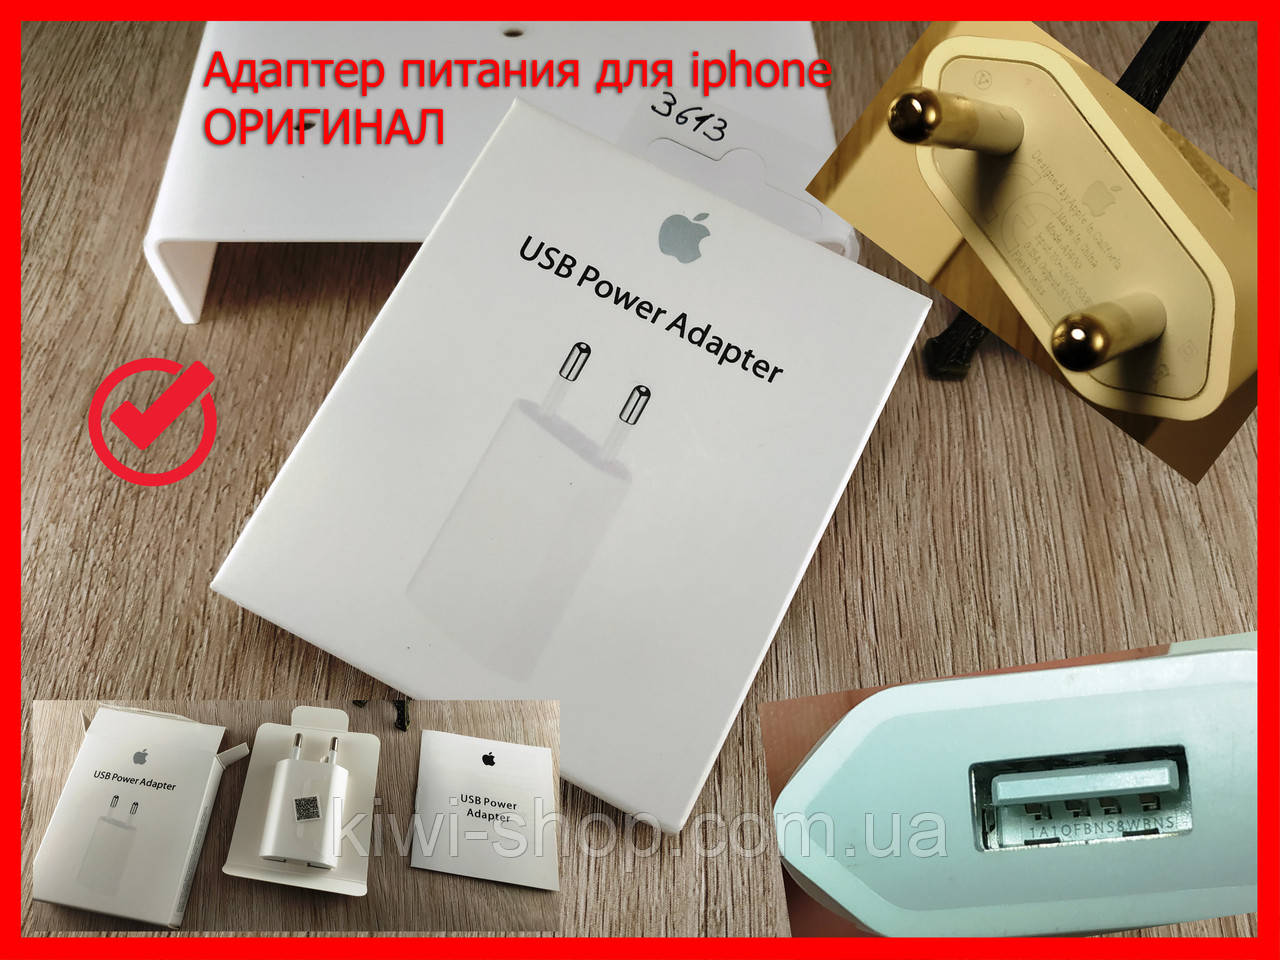 Apple адаптер живлення для iPhone Apple 5W, USB Power Adapter, мережевий зарядний пристрій для айфона, 5V 1A